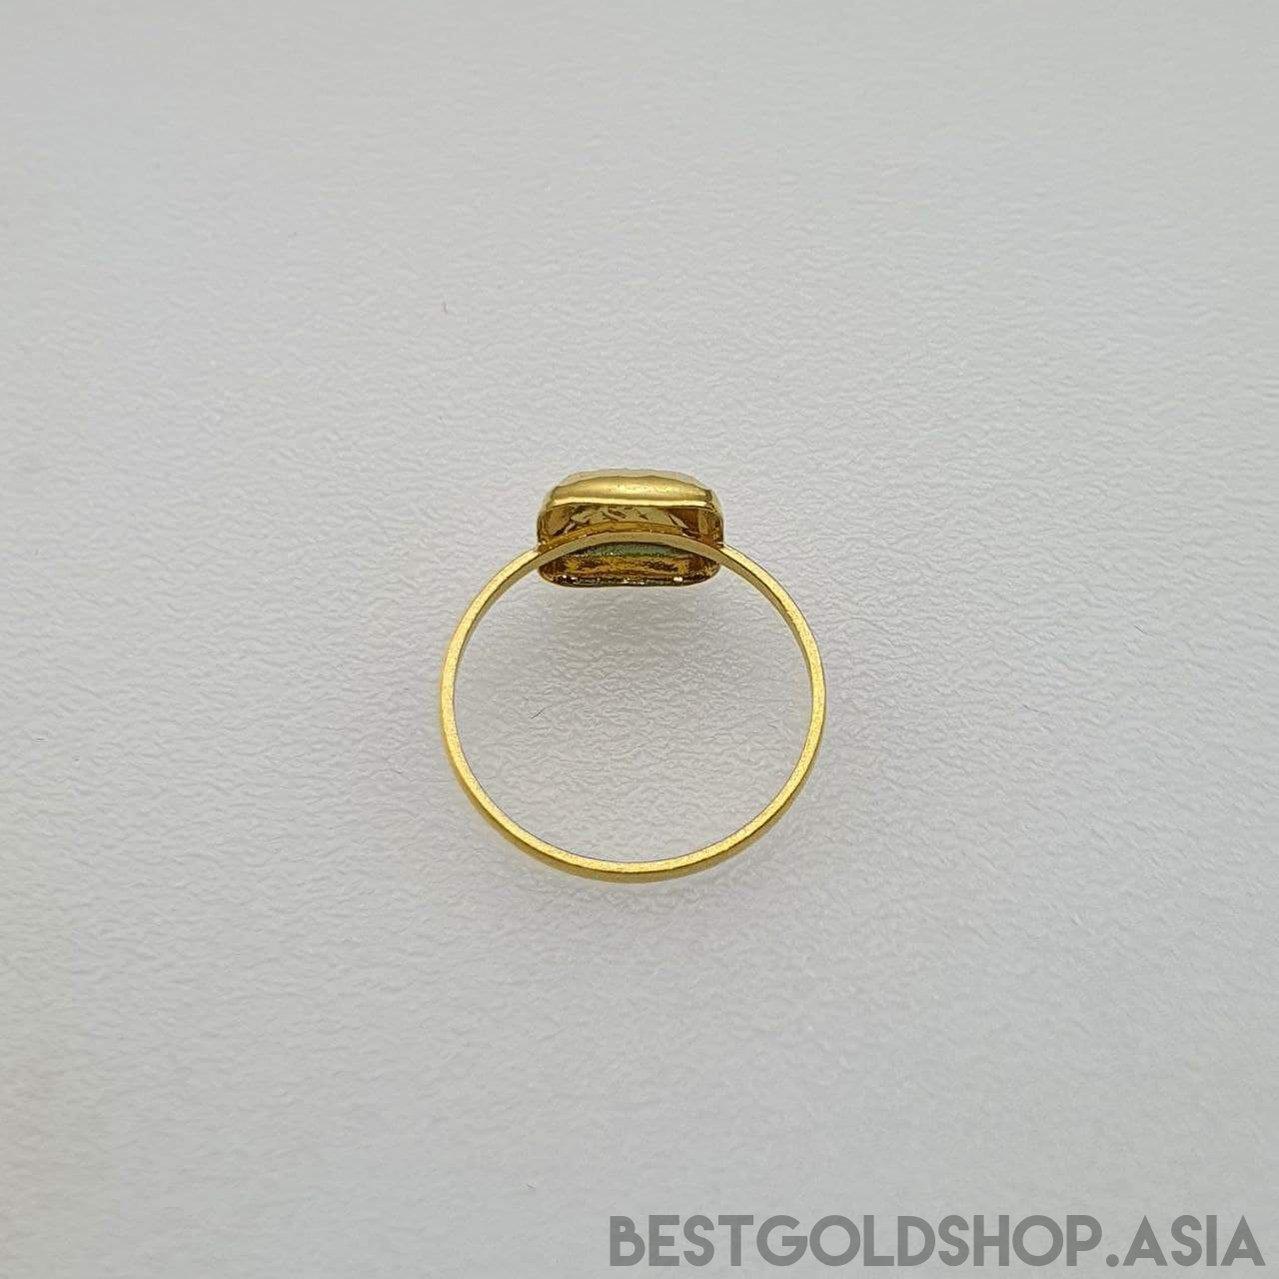 22k / 916 Gold Biscot Ring V2-916 gold-Best Gold Shop